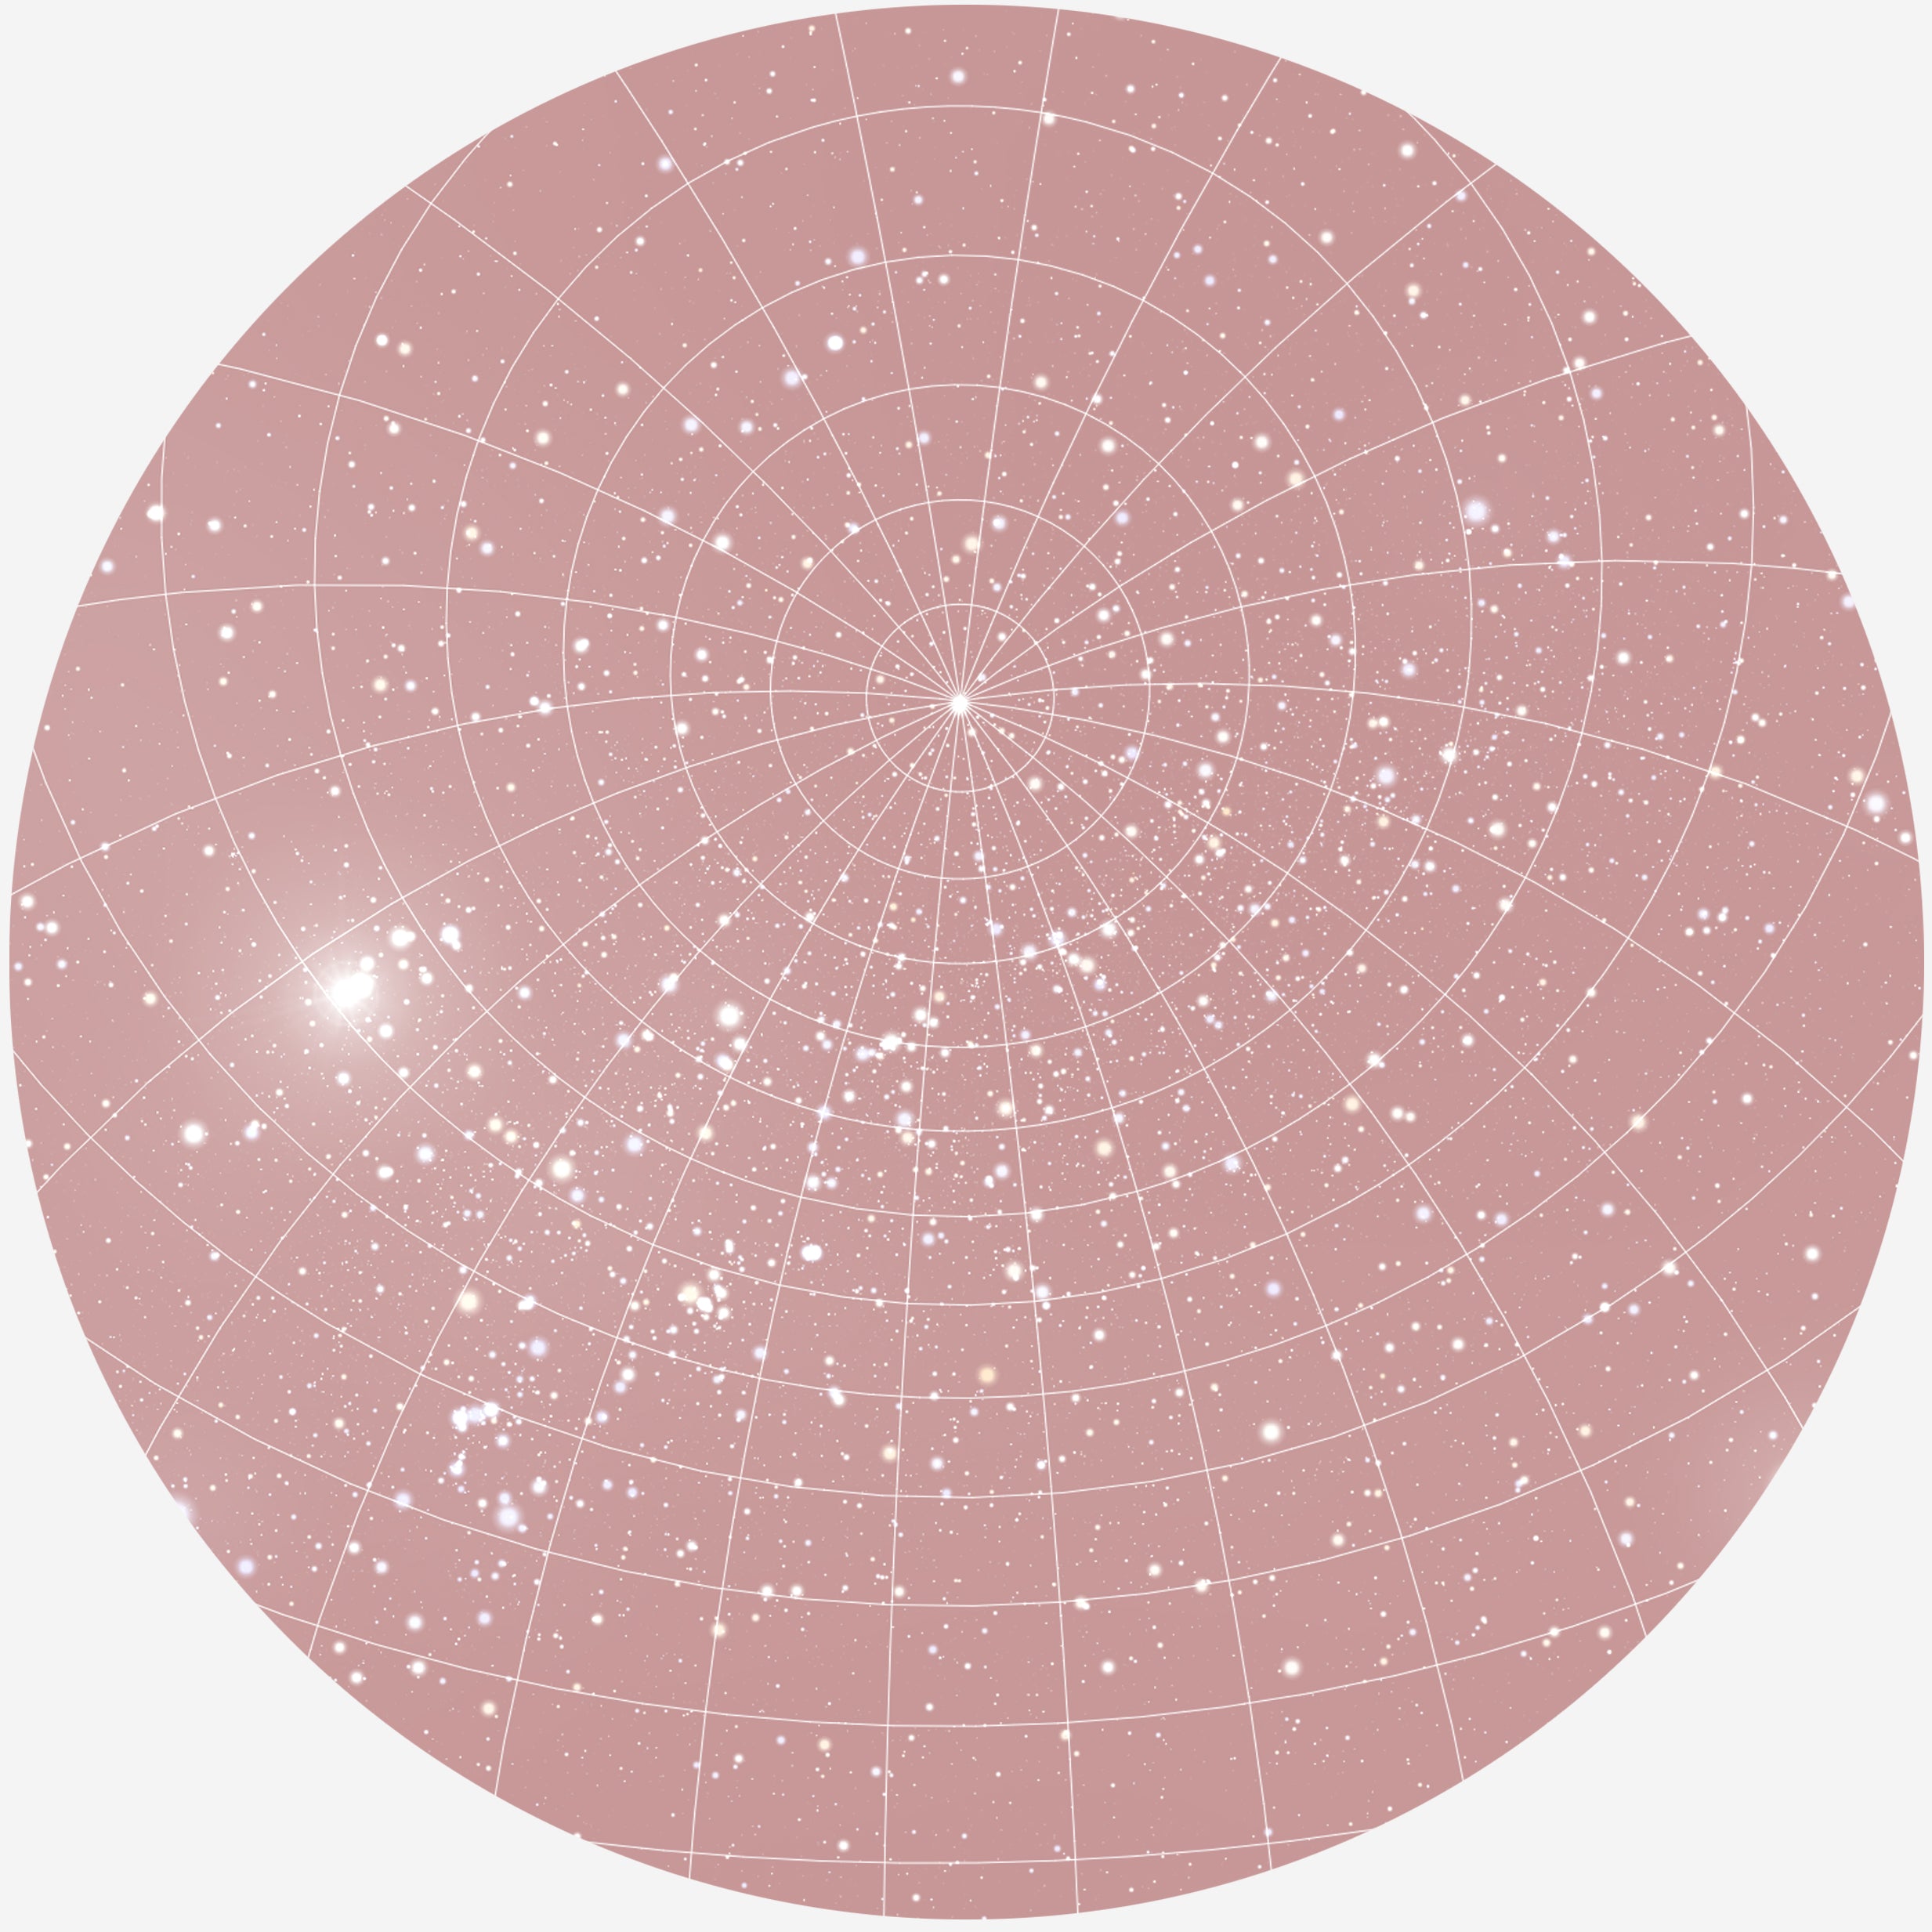 Billede af RUND PLAKAT MED PERSONLIG STJERNEHIMMEL (BLUSH)) - 20 cm / Stjernehimmel med gitter